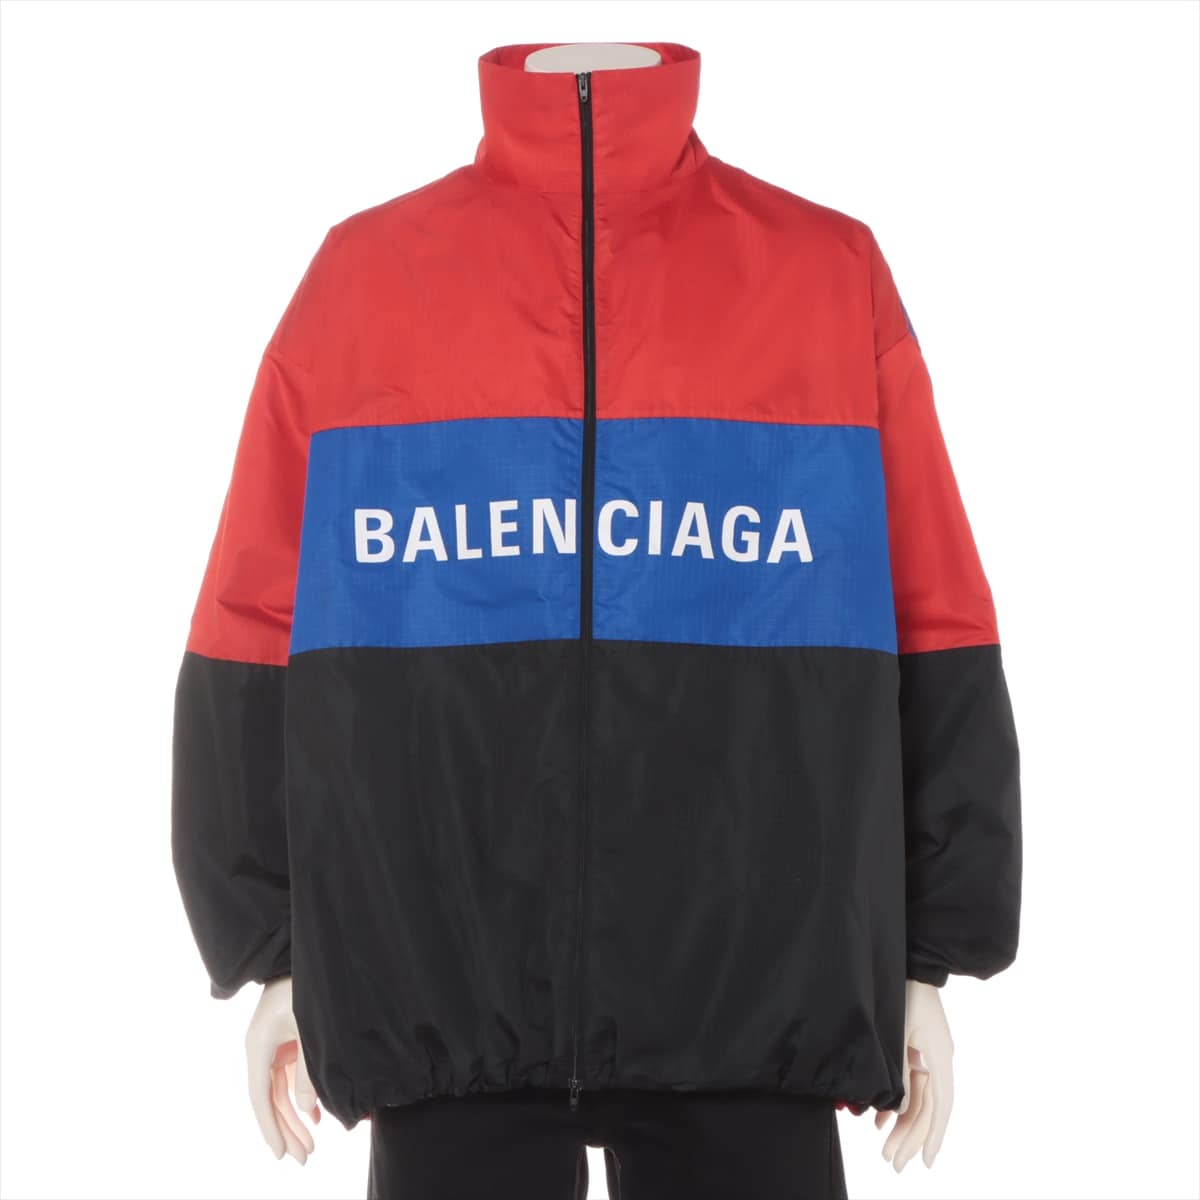 Balenciaga 19SS Polyester Jacket 44 Men's Red x Black  534317